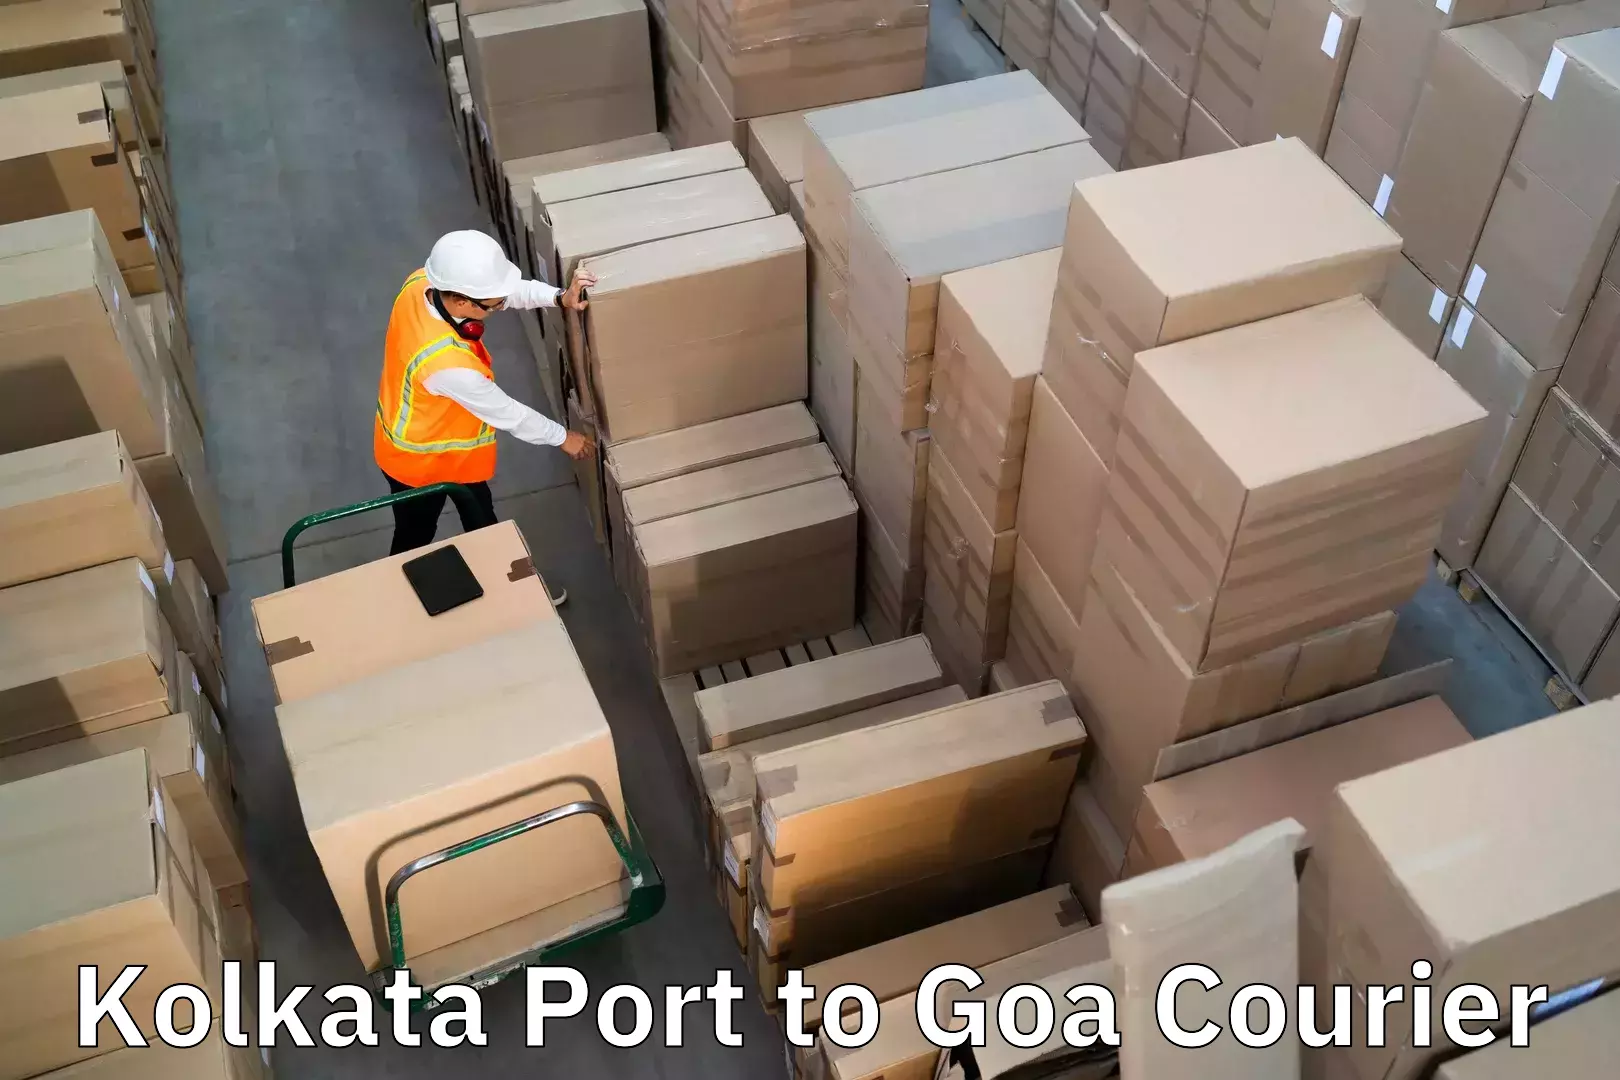 Luggage shipment tracking Kolkata Port to Vasco da Gama